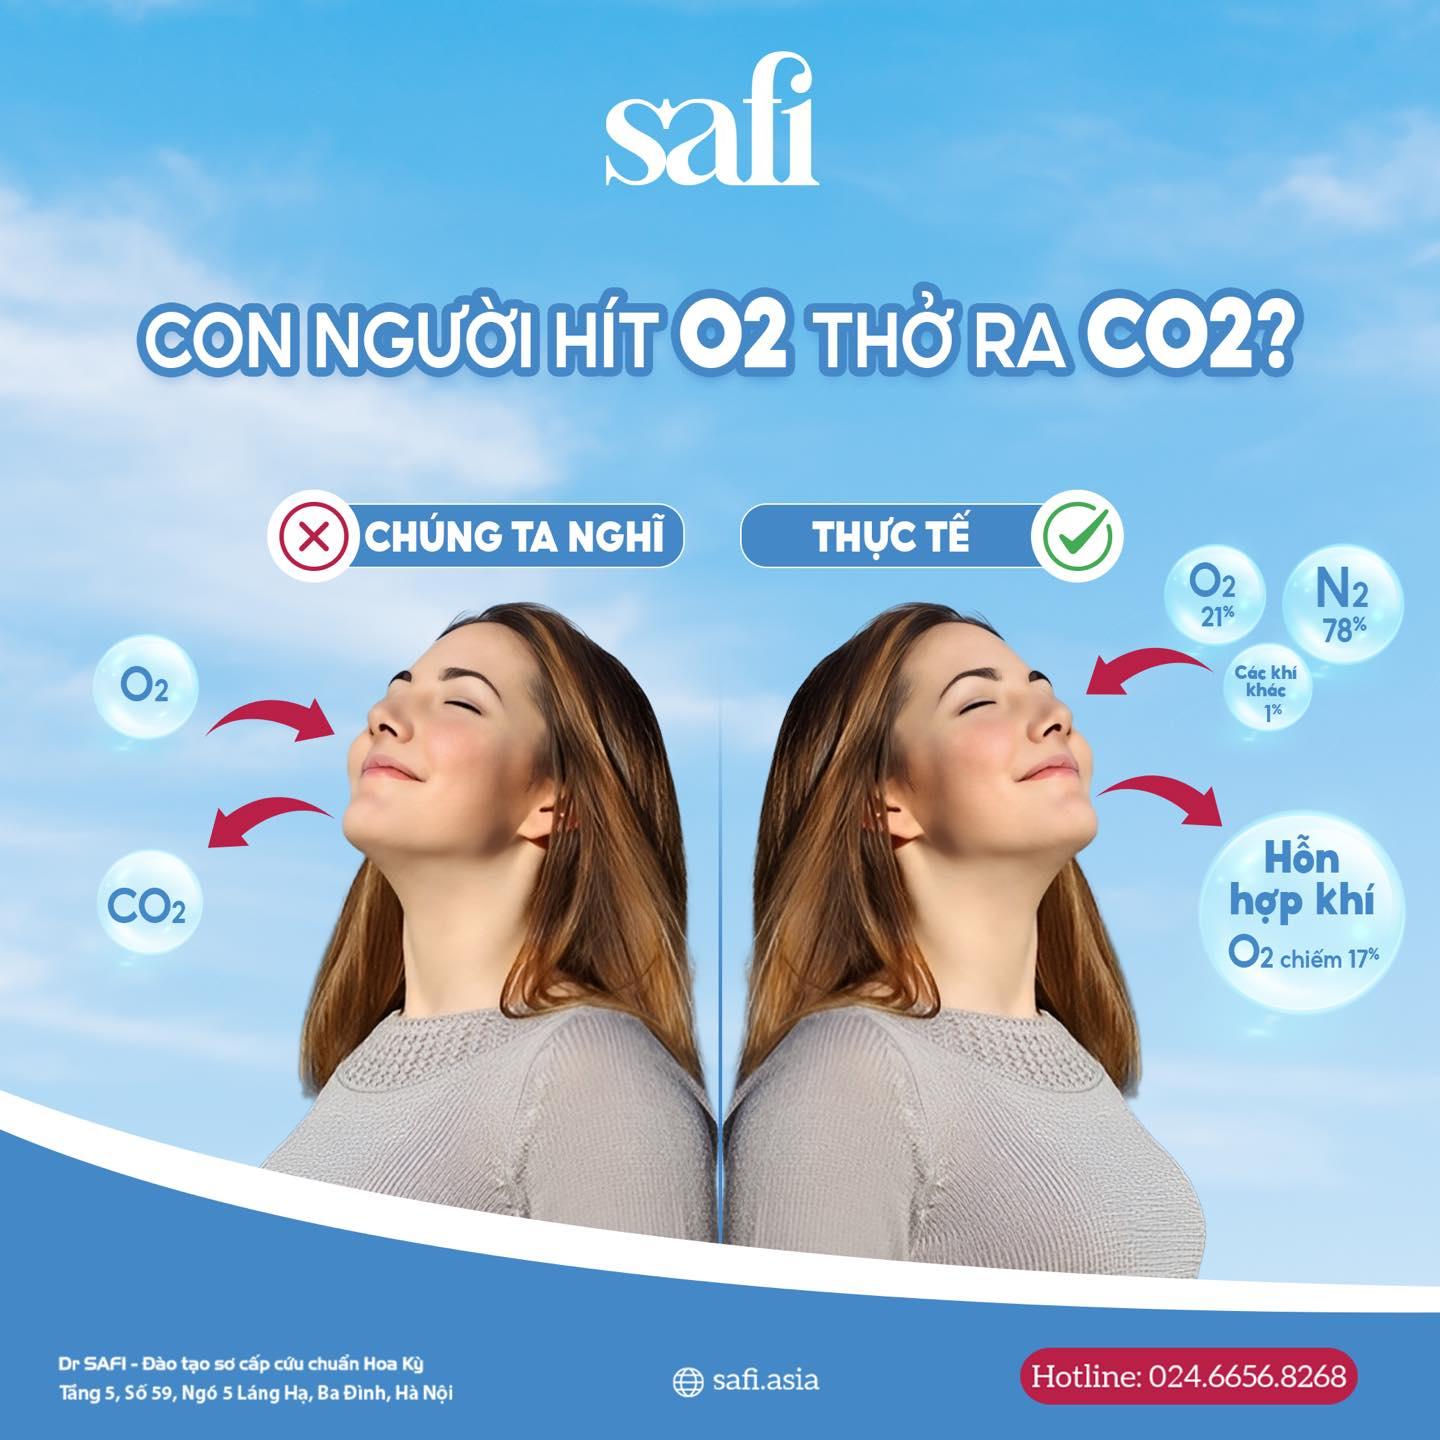 Con người hít O2 thở ra CO2?